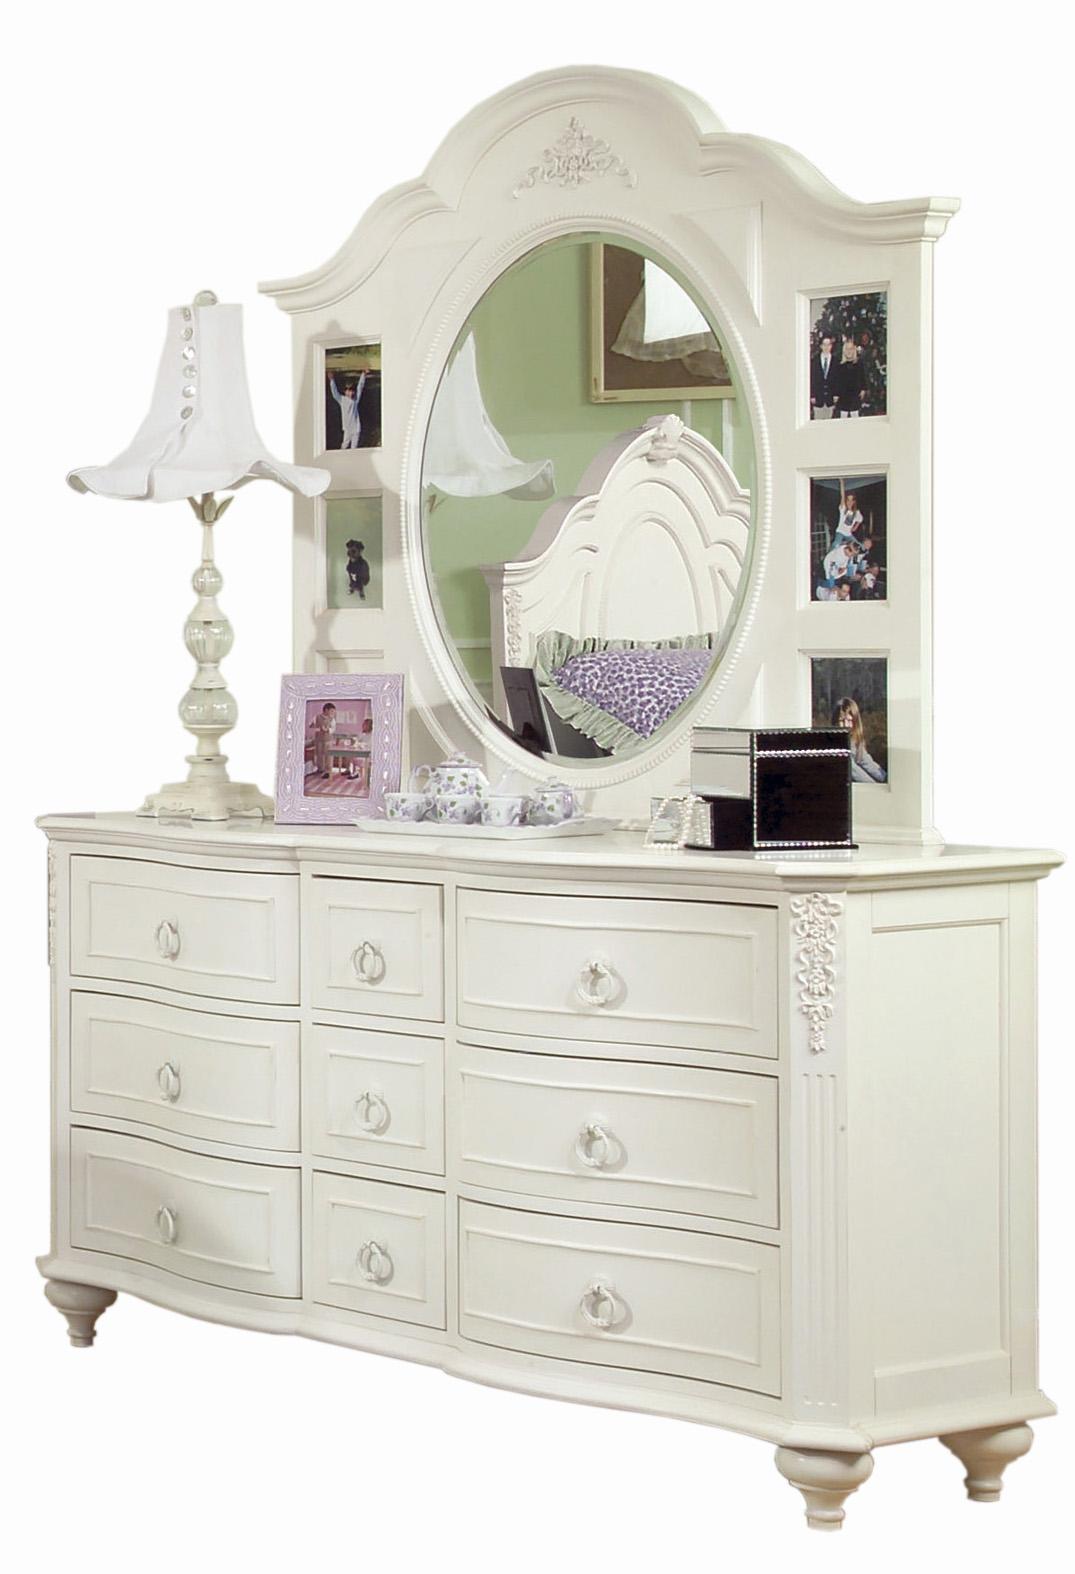 children's dresser with mirror